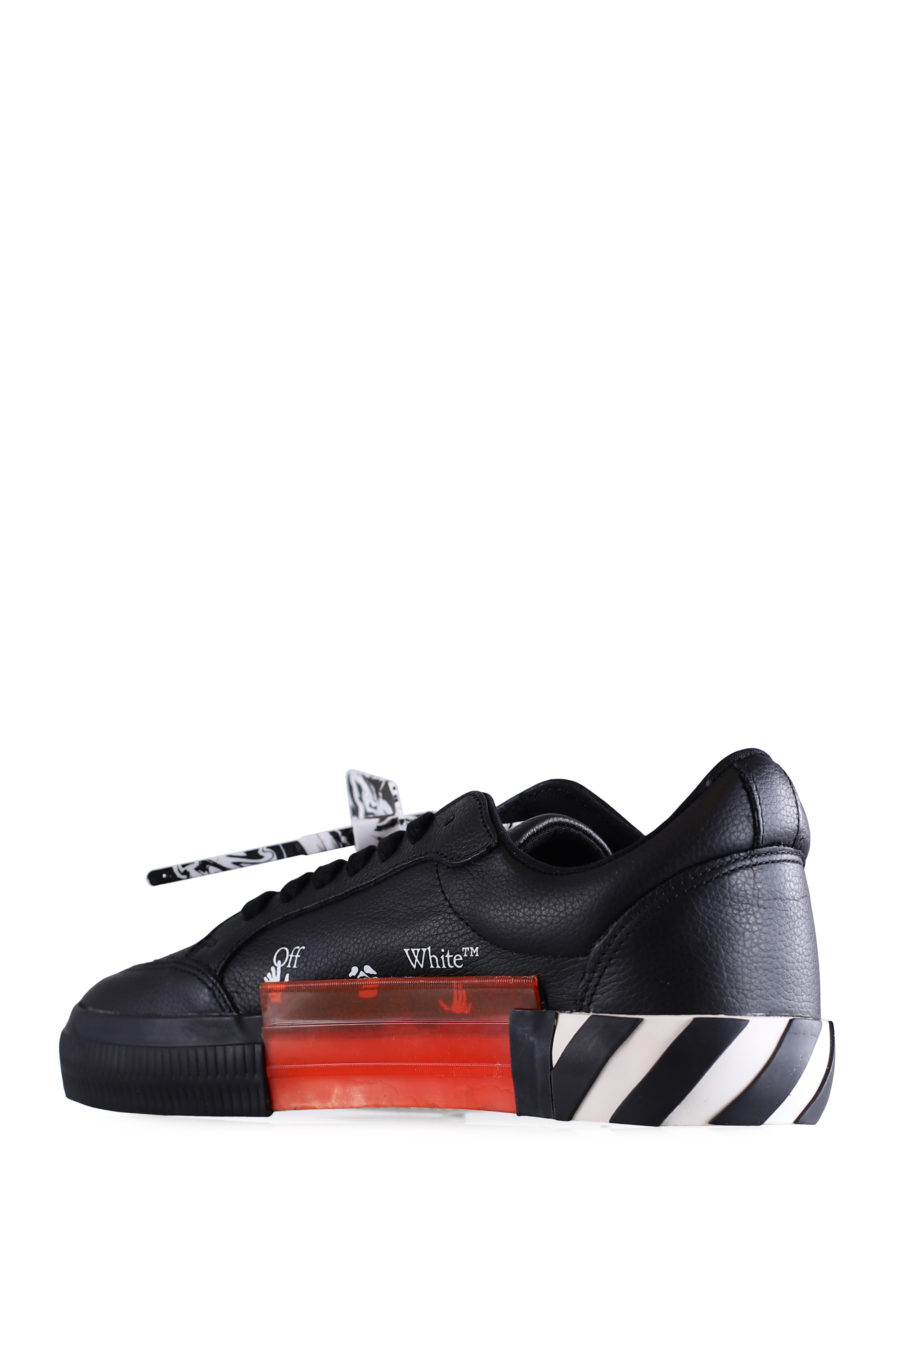 Zapatillas negras "Vulcanized" de cuero - IMG 0663